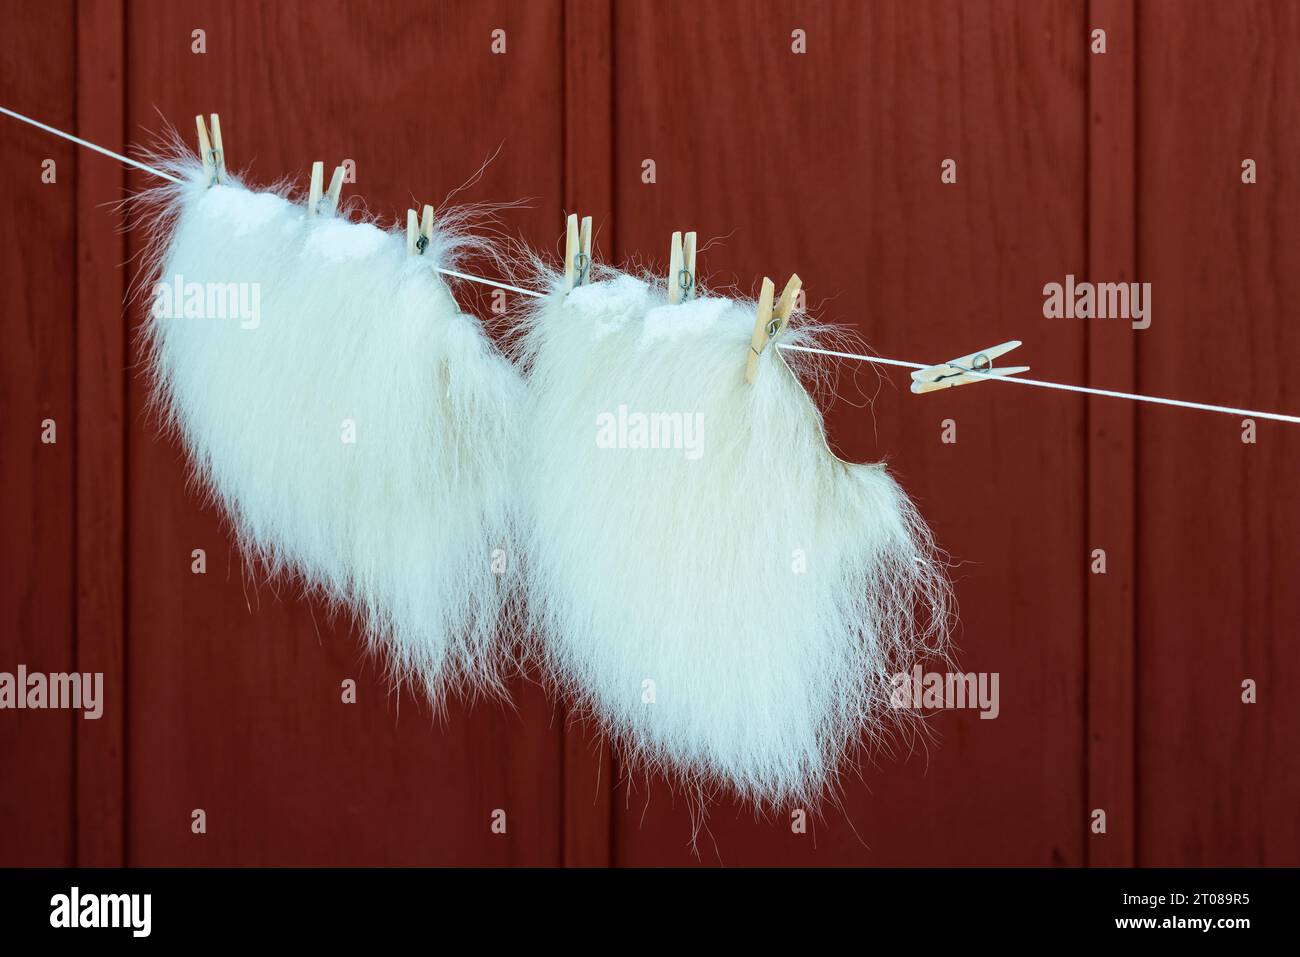 Guanti in eskimo per asciugare da clothespin in legno sulla linea di lavaggio. Foto Stock